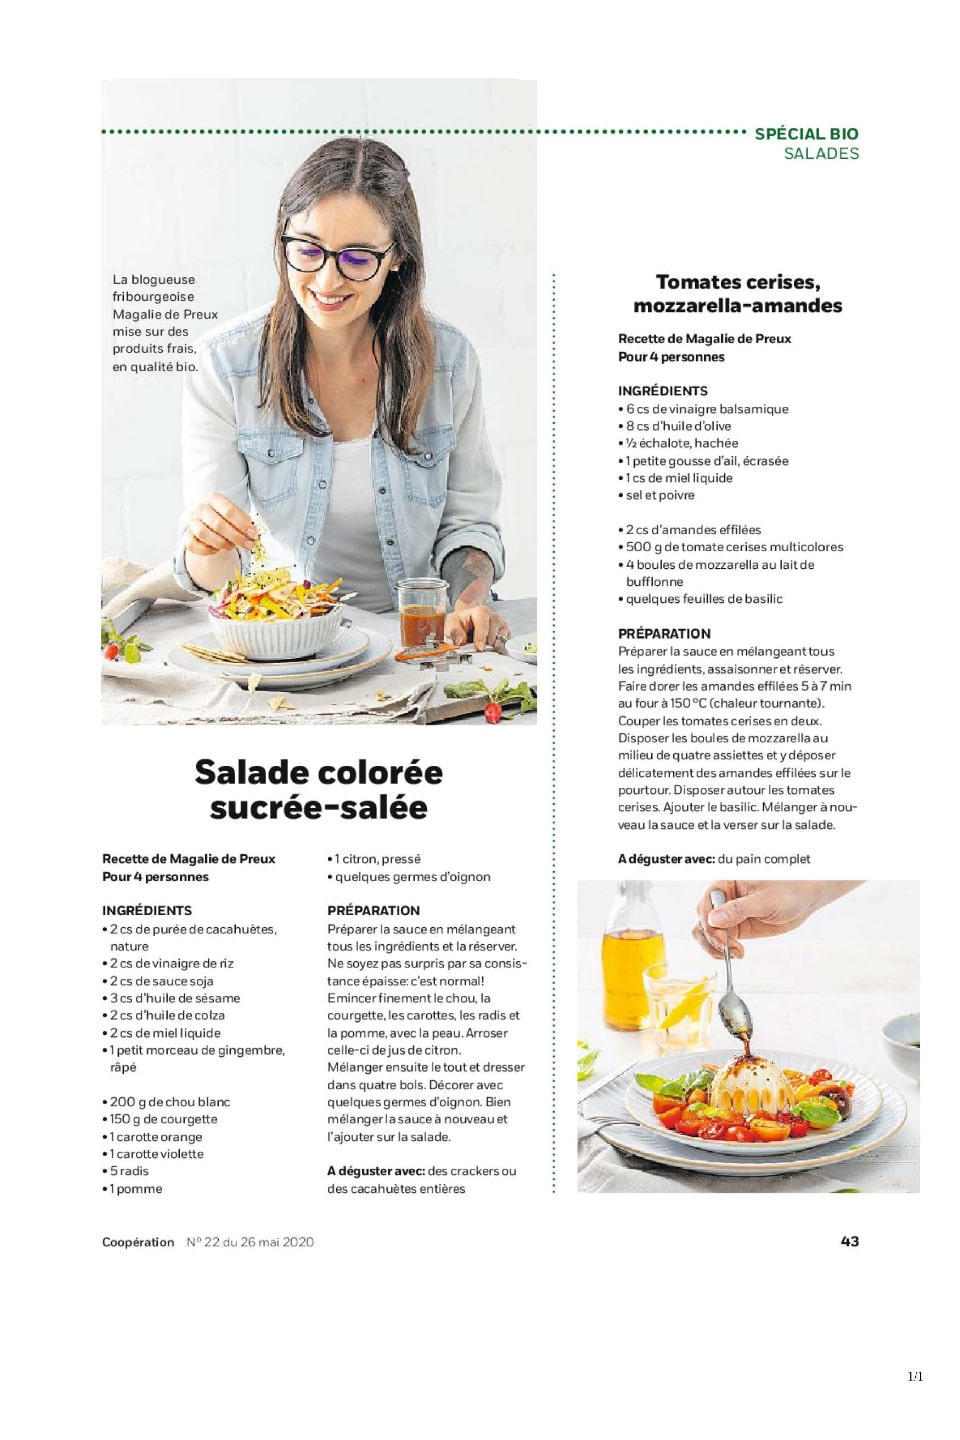 Magalie De Preux - Nutritionniste et micronutritionniste - Journal de la Coop « Cooperation » n° 22 du 26 mai 2020, recette de la salade colorée sucré/salée